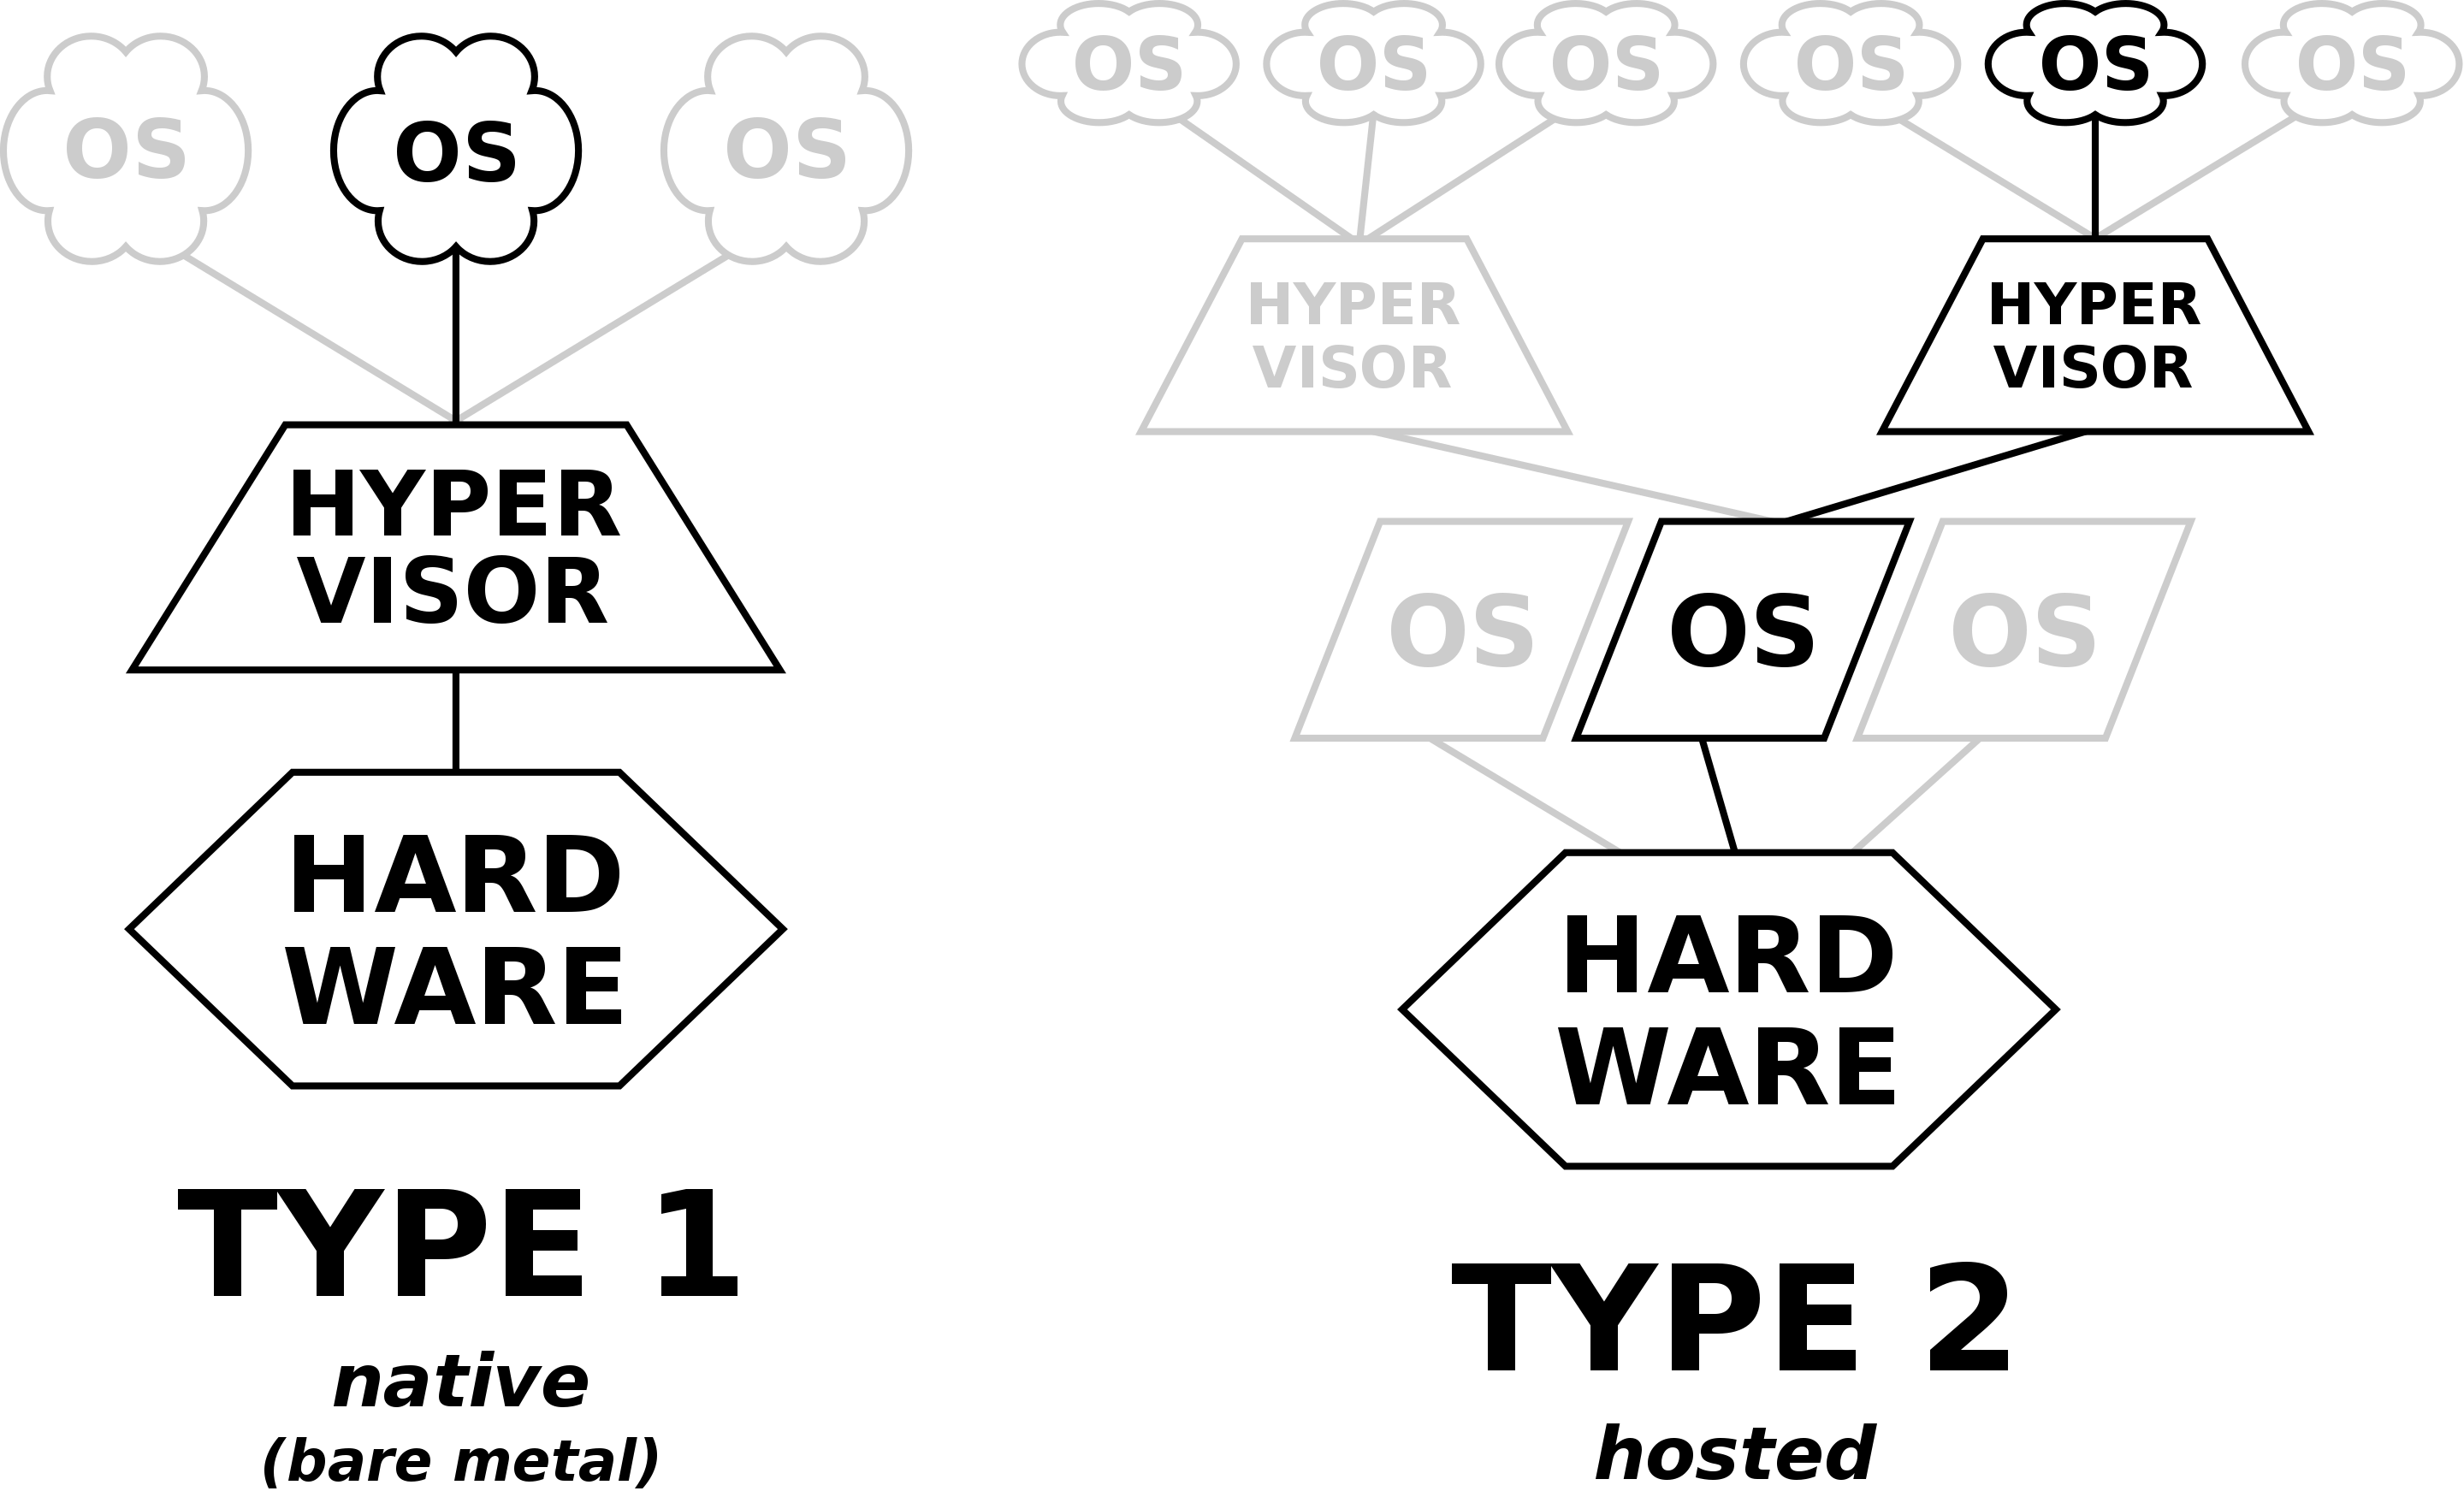 Hypervisor - Type 1 vs Type 2 (image from Wikipedia)